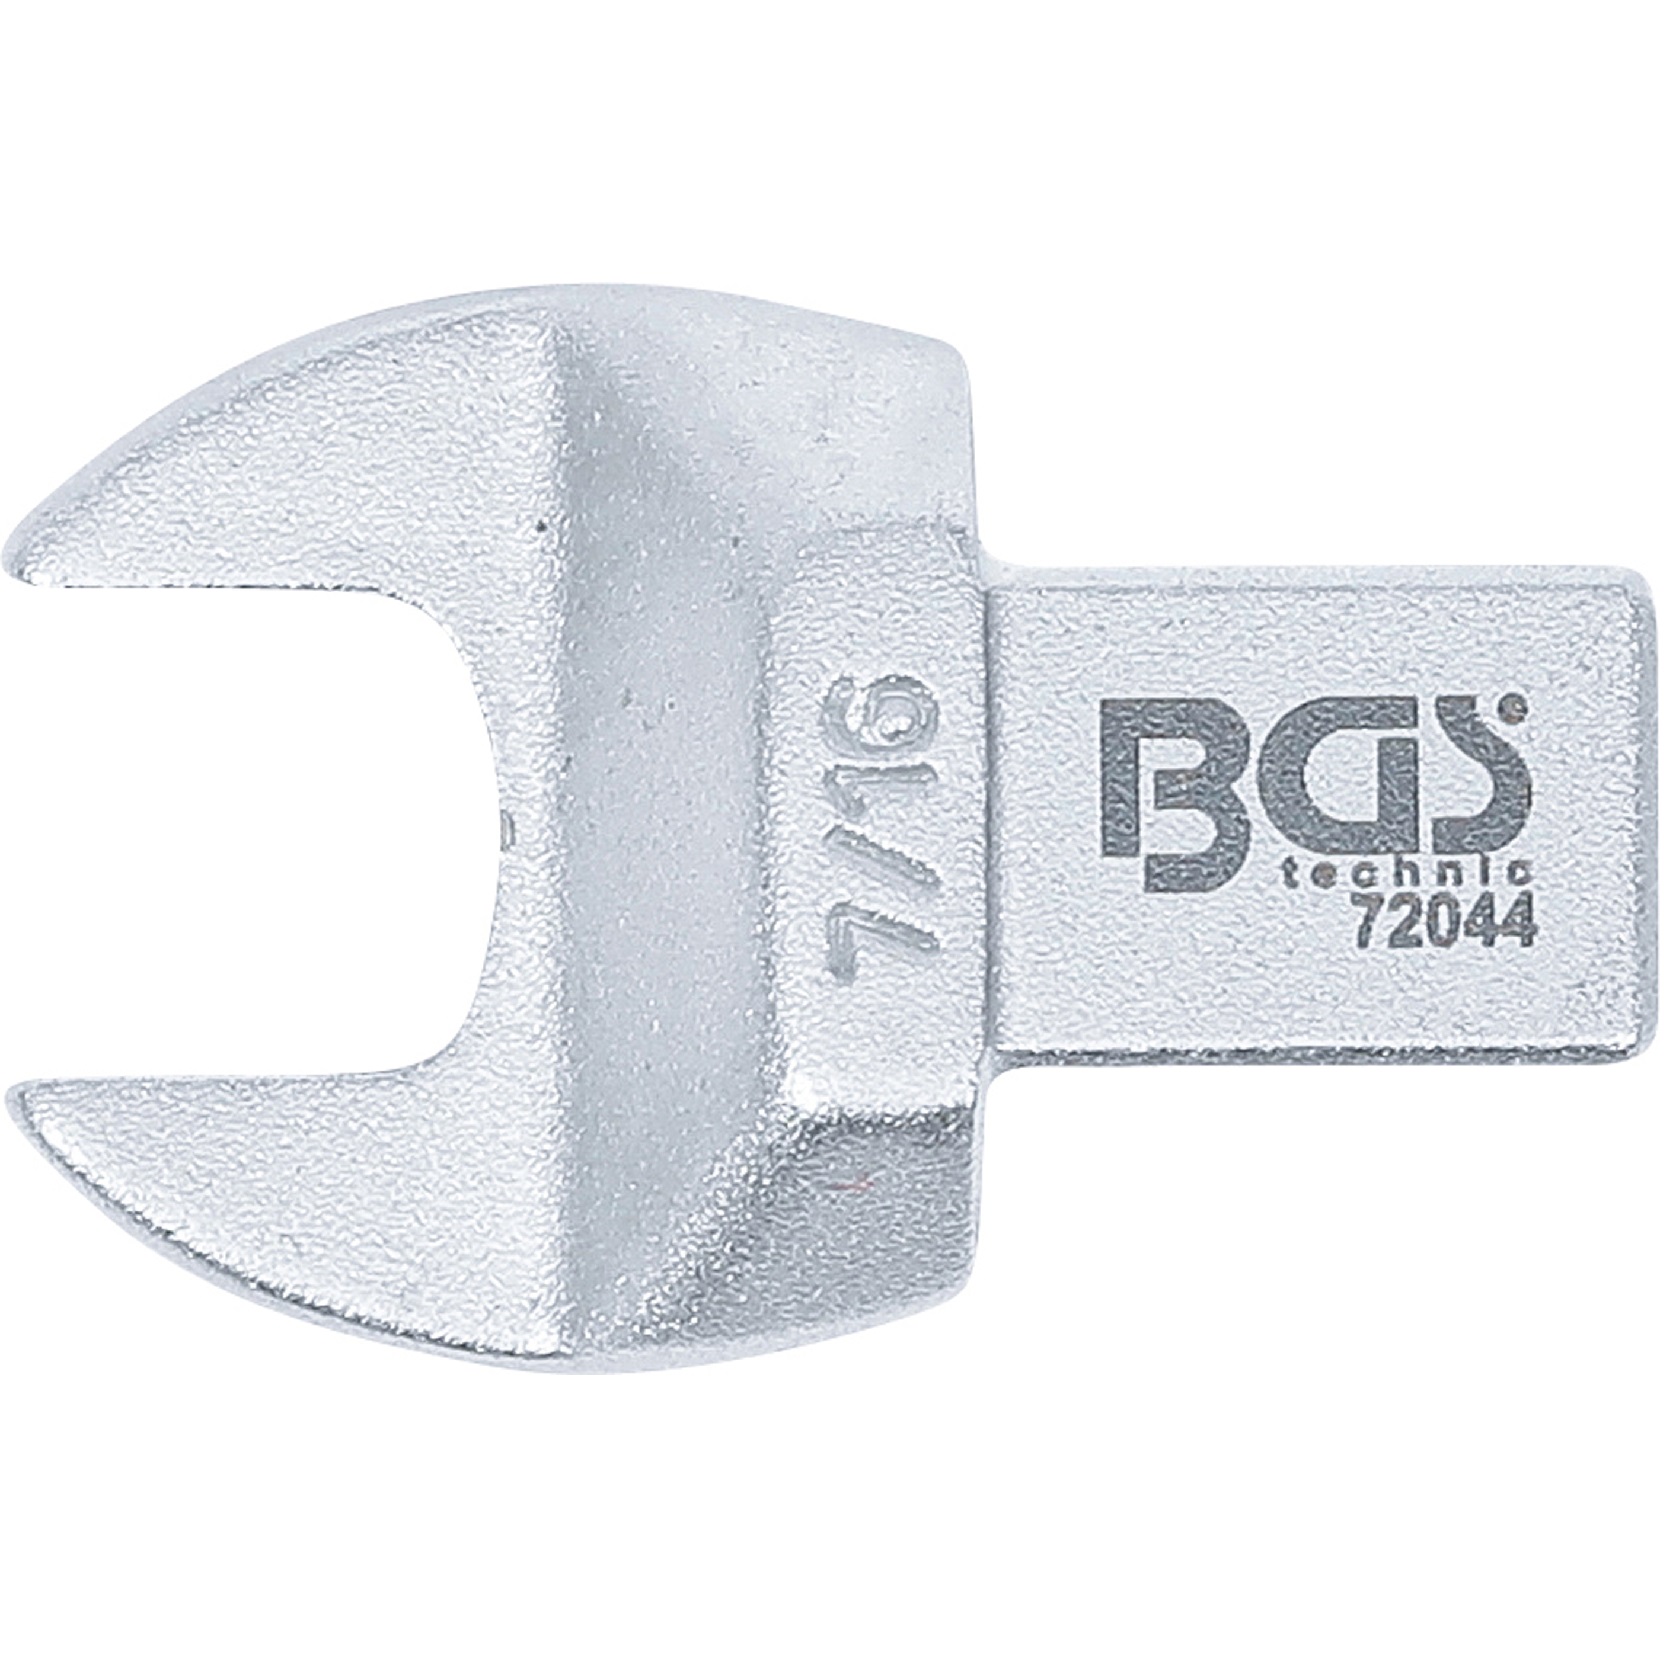 Kľúč nástrčný plochý vidlicový, palcový 7/16", 4-hran 9 x 12 mm, BGS 72044